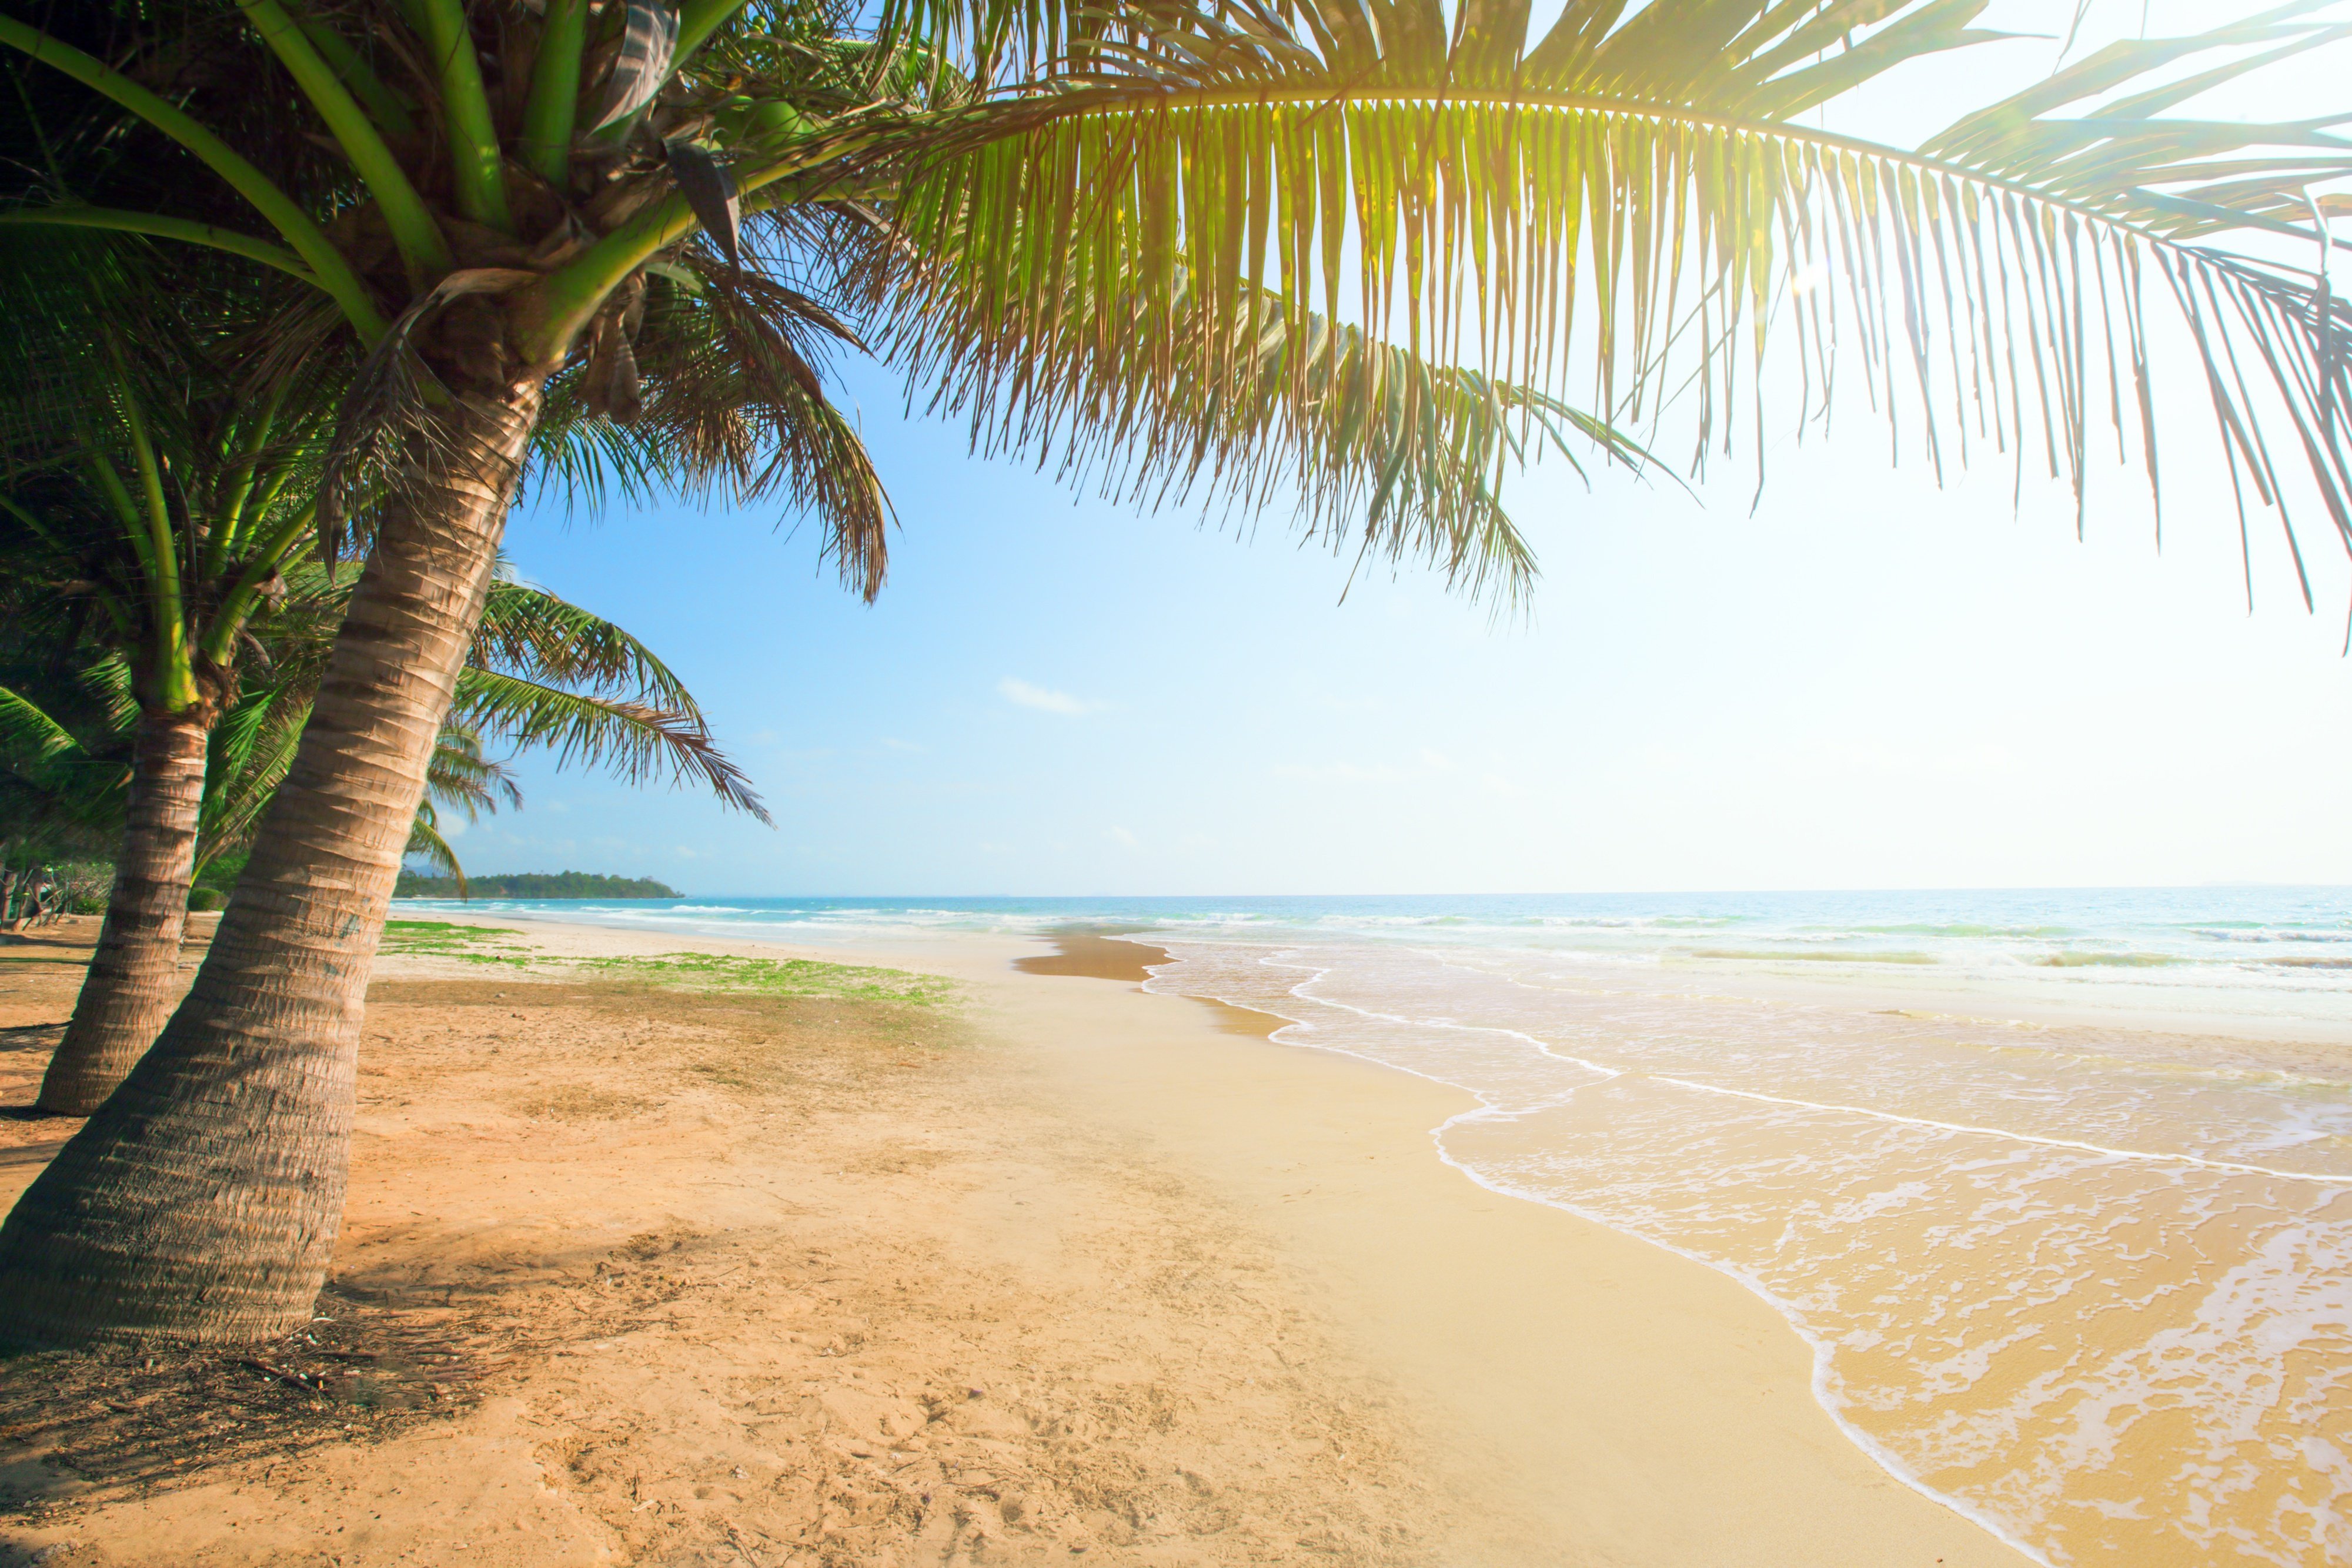 Beach tree. Пляж с пальмами. Пляж песок пальмы. Солнце пляж. Пляж фон.